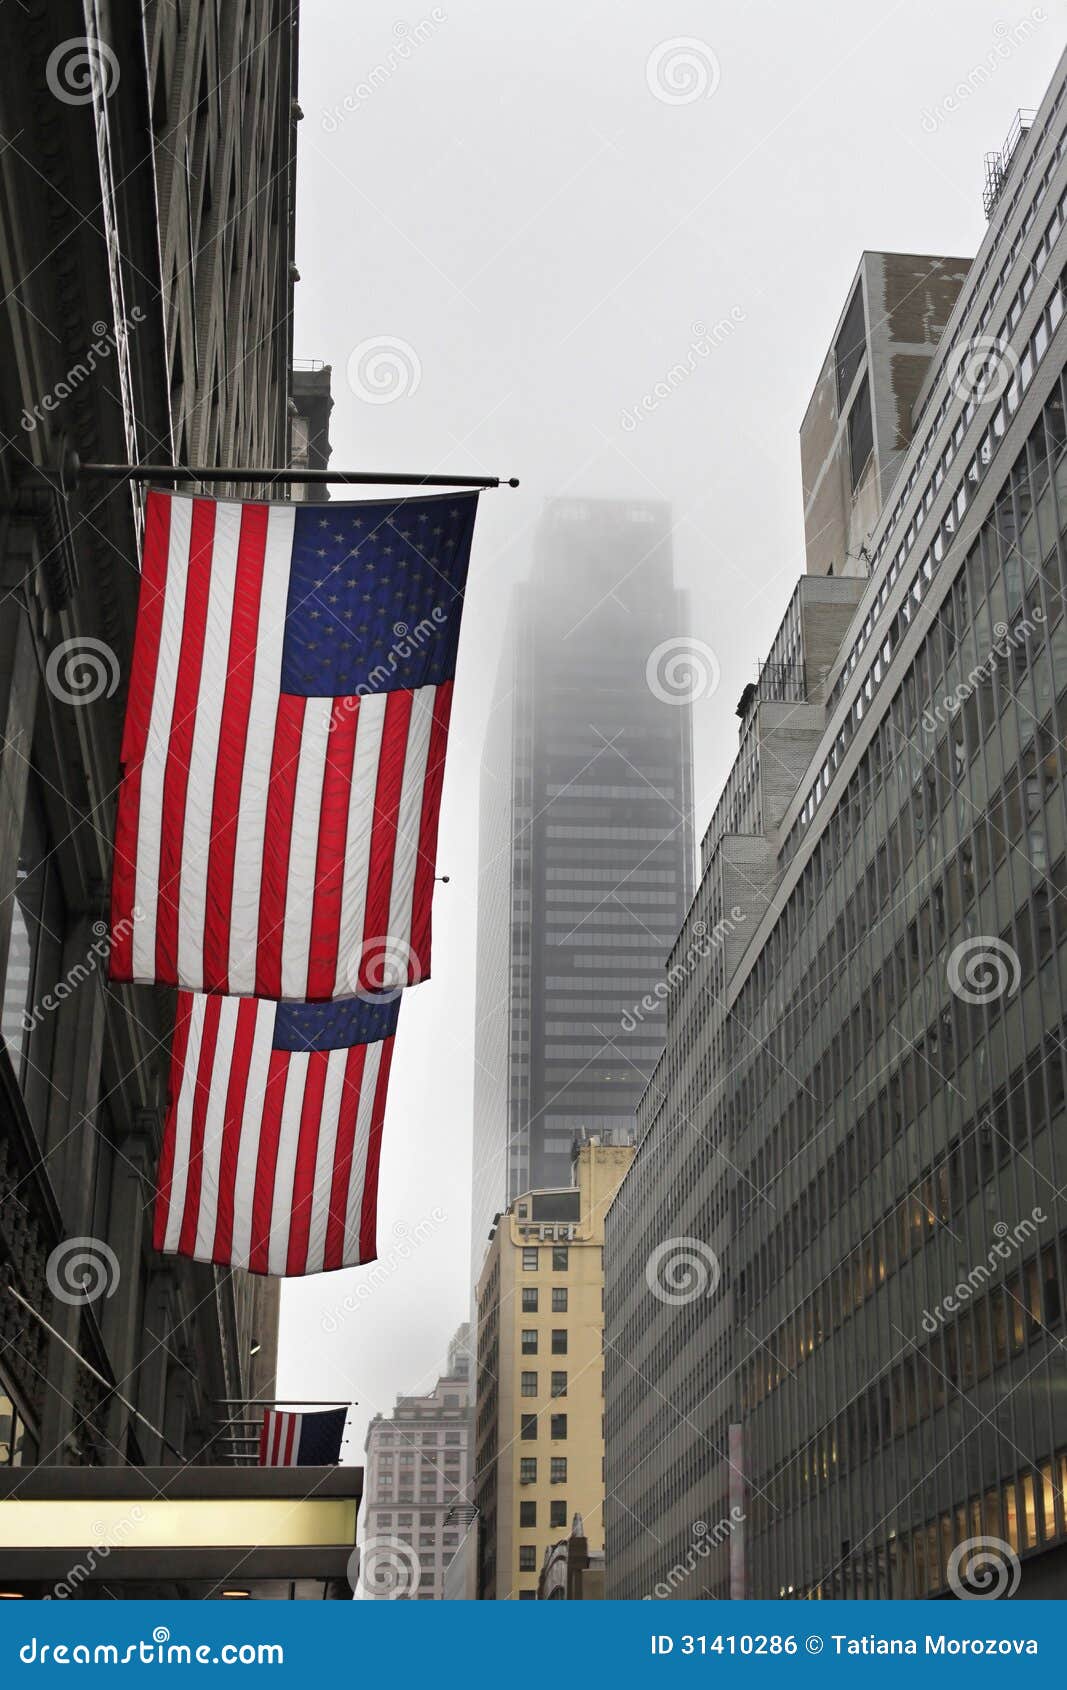 天空,云朵,美利坚合众国,国旗cc0可商用图片-千叶网